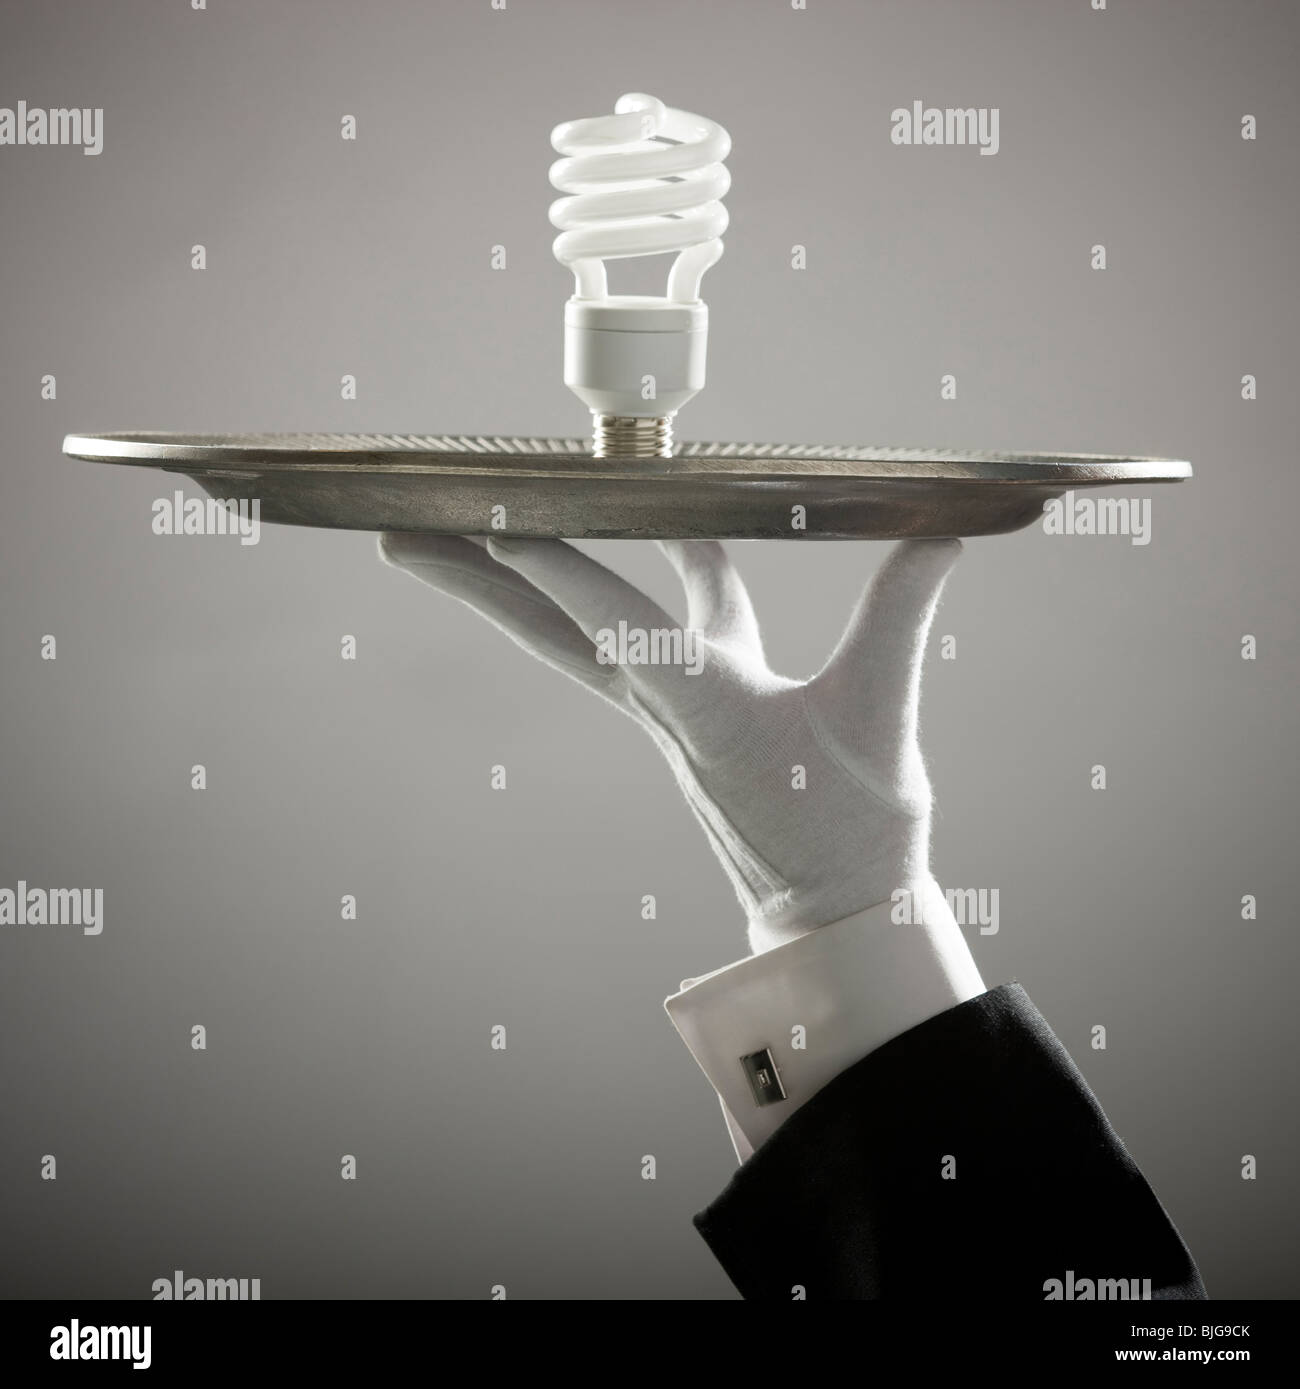 energy saving lightbulb on a platter Stock Photo